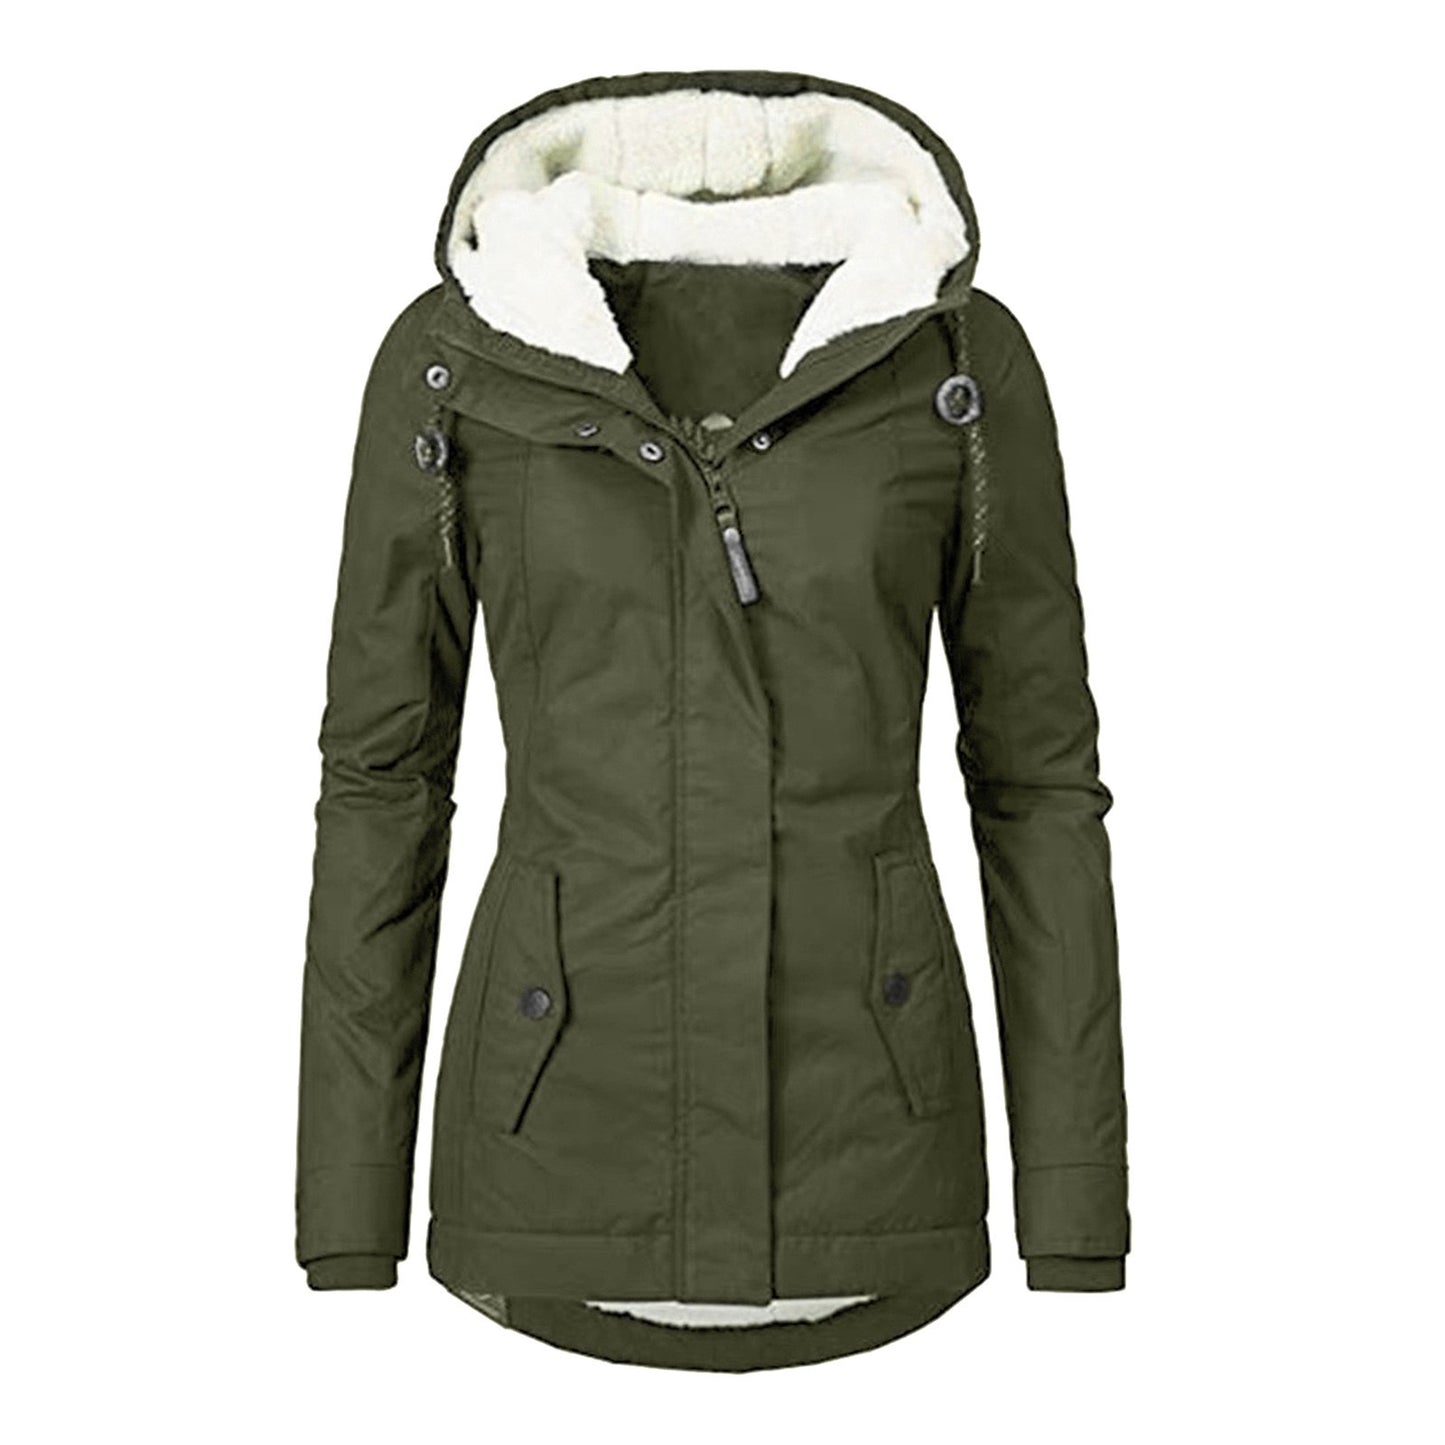 Women's Fall Winter Long Coat Windproof Warm 3 in 1 Loose Casual Sports Jacket Zipper Waterpoof Down Parkas